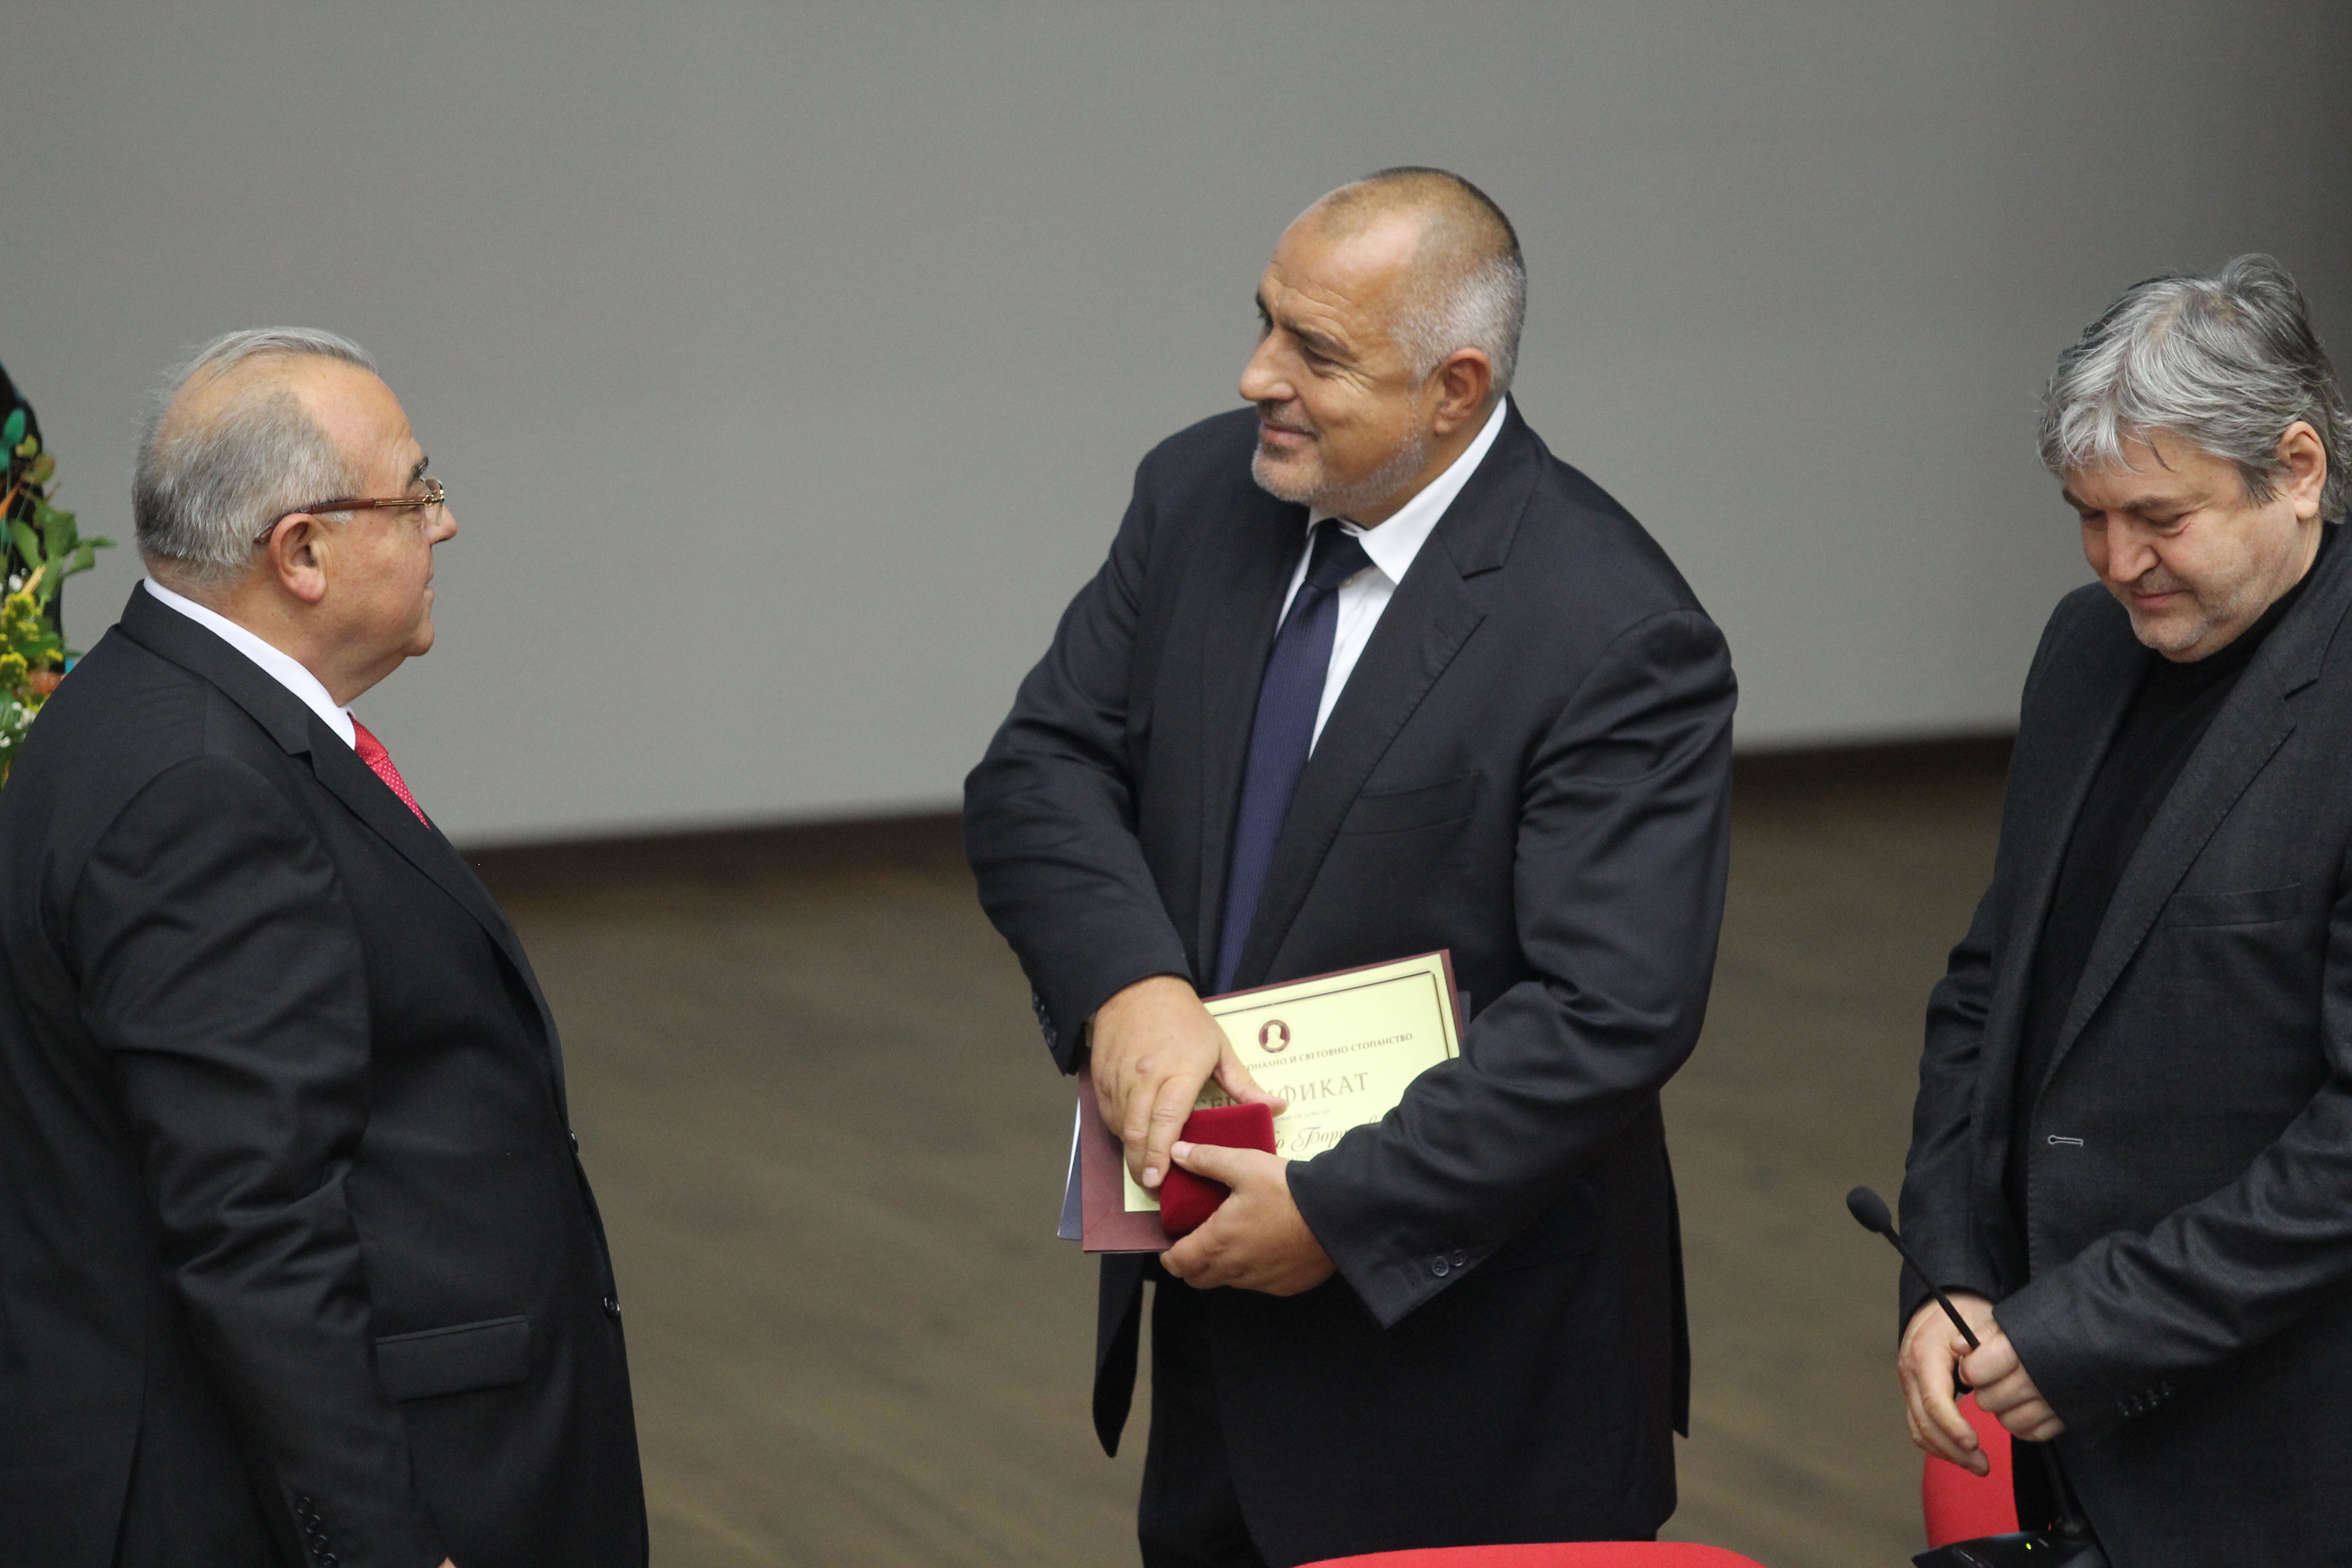 Премиерът Бойко Борисов изнесе публична академична лекция на тема „България, Балканите, Европа и светът“ в УНСС. В речта си той призова към мир и напомни на европейските лидери, че не трябва да се прекъсва диалога с Турция, страната „с най-голямата армия в Европа“.